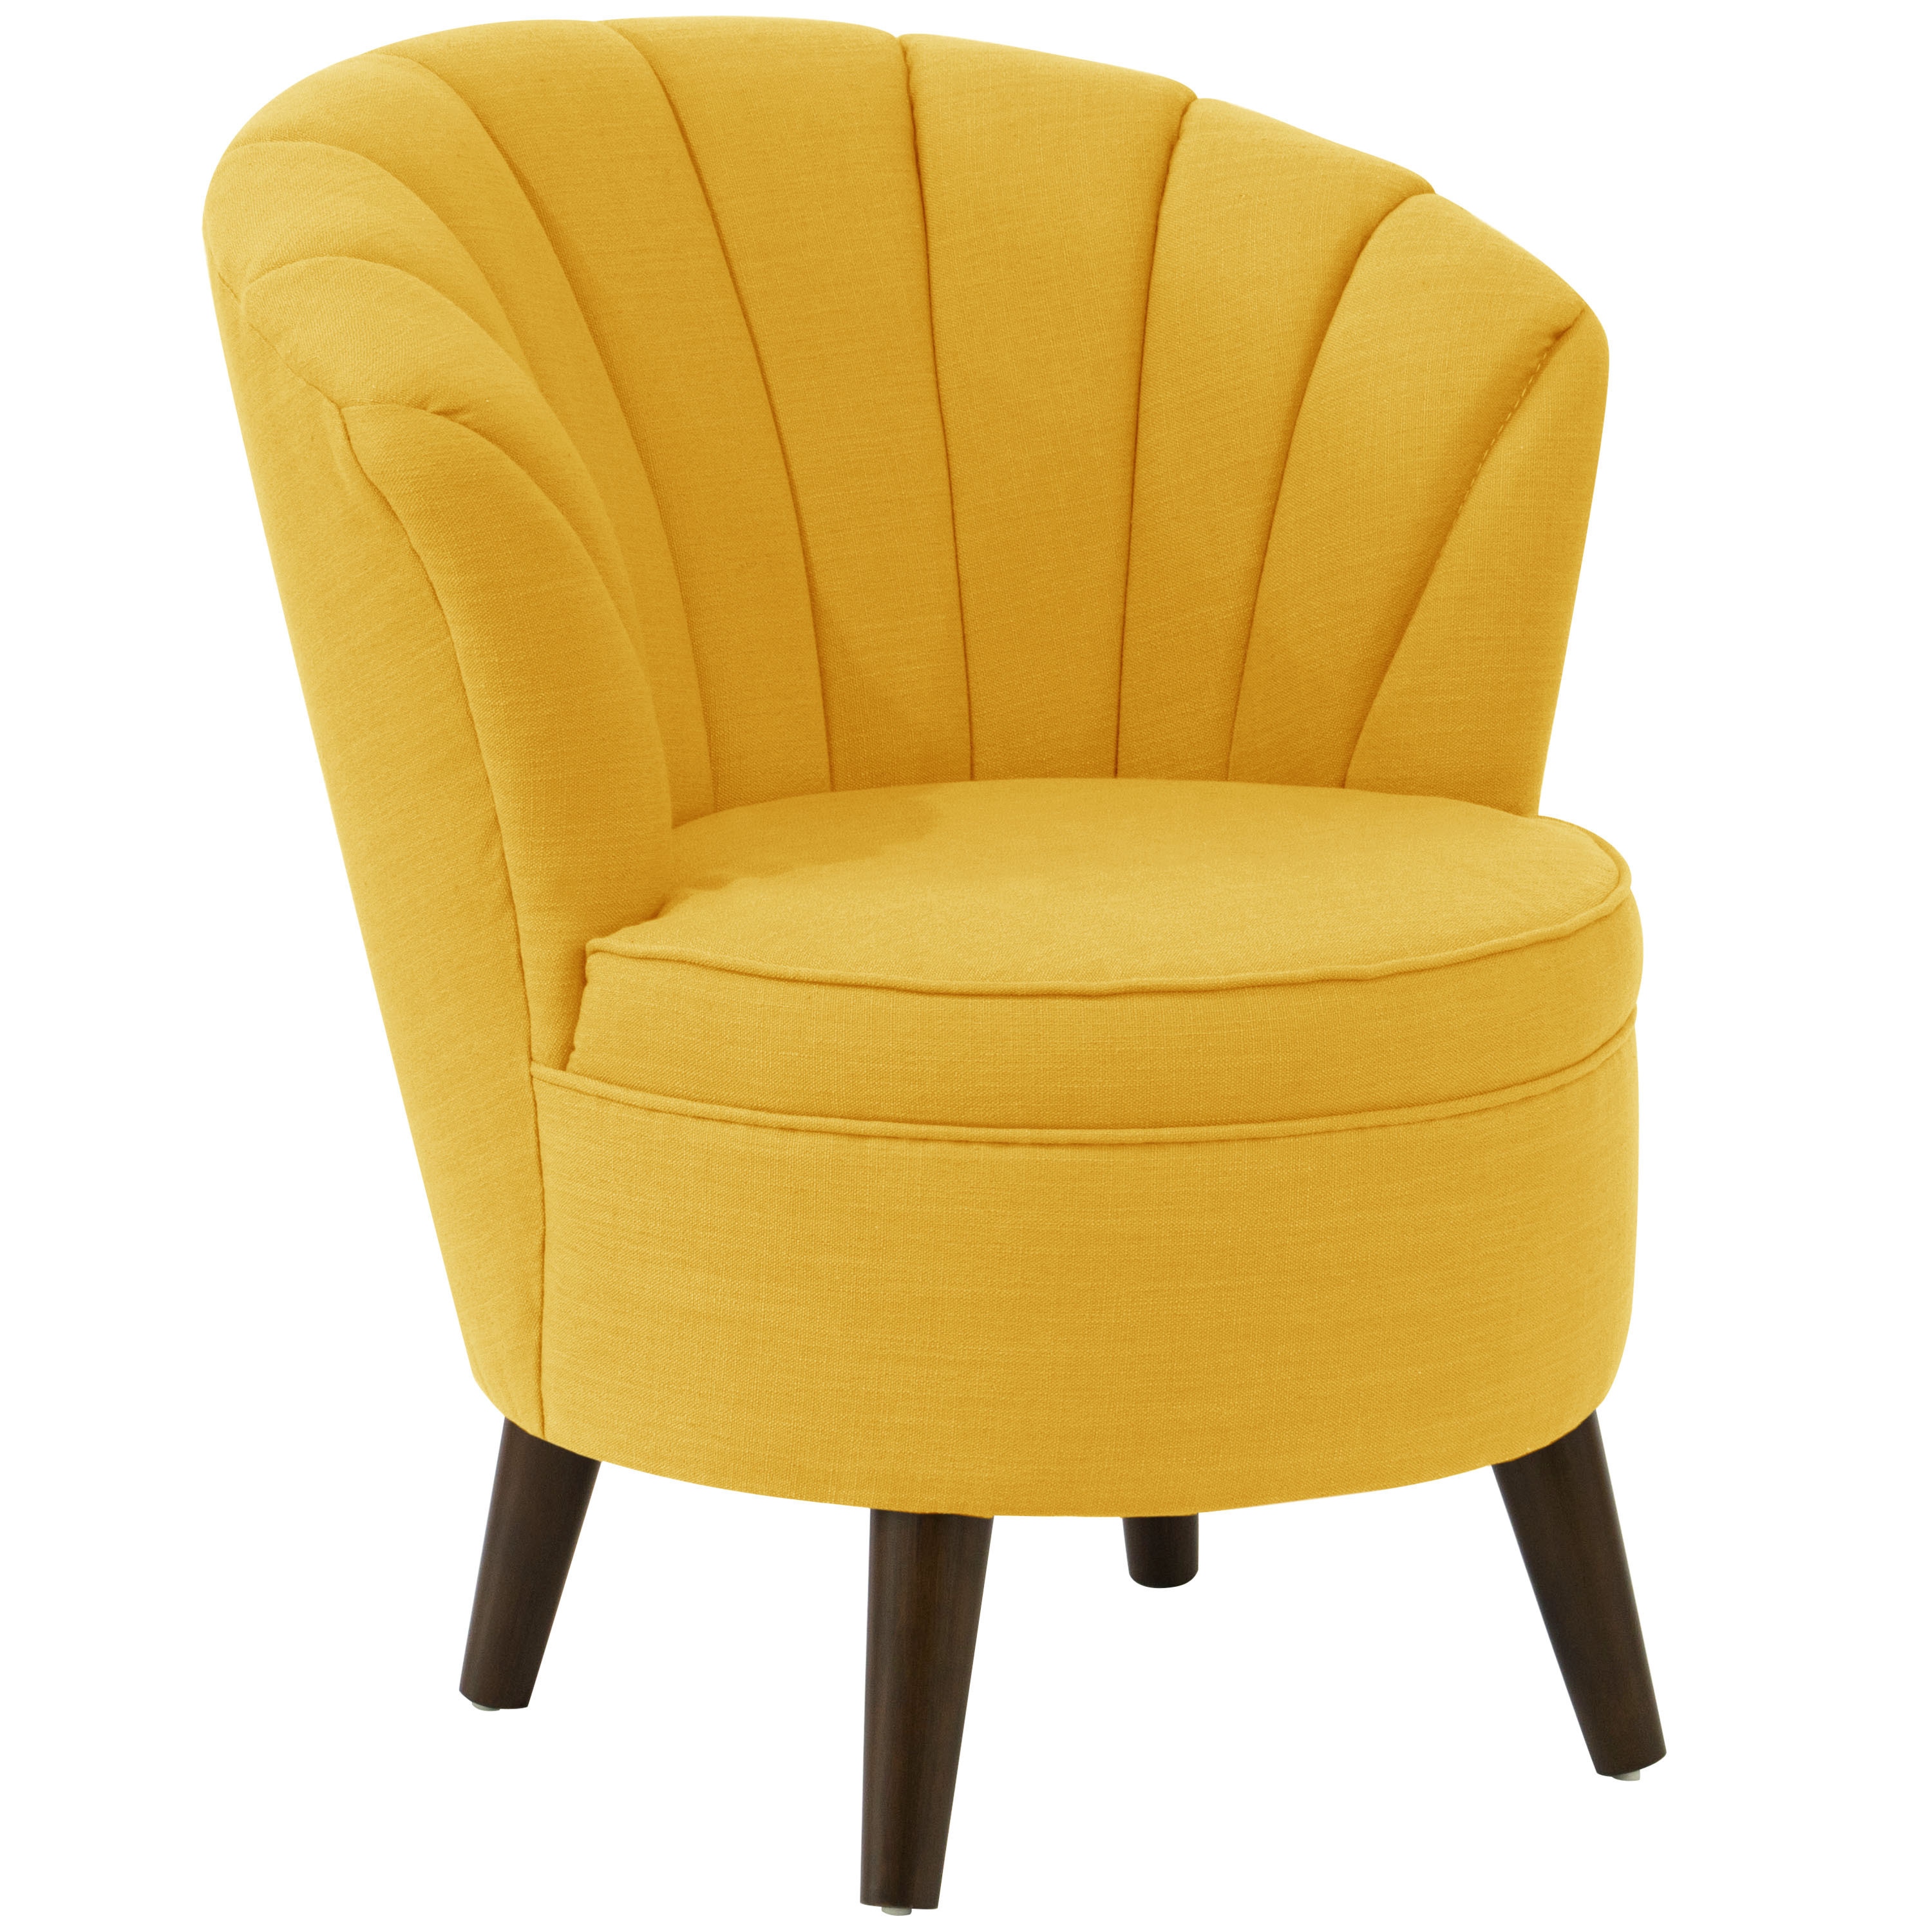 Yellow chair. Желтое кресло. Кресло мягкое желтое. Кресло желтого цвета. Маленькое кресло со спинкой.